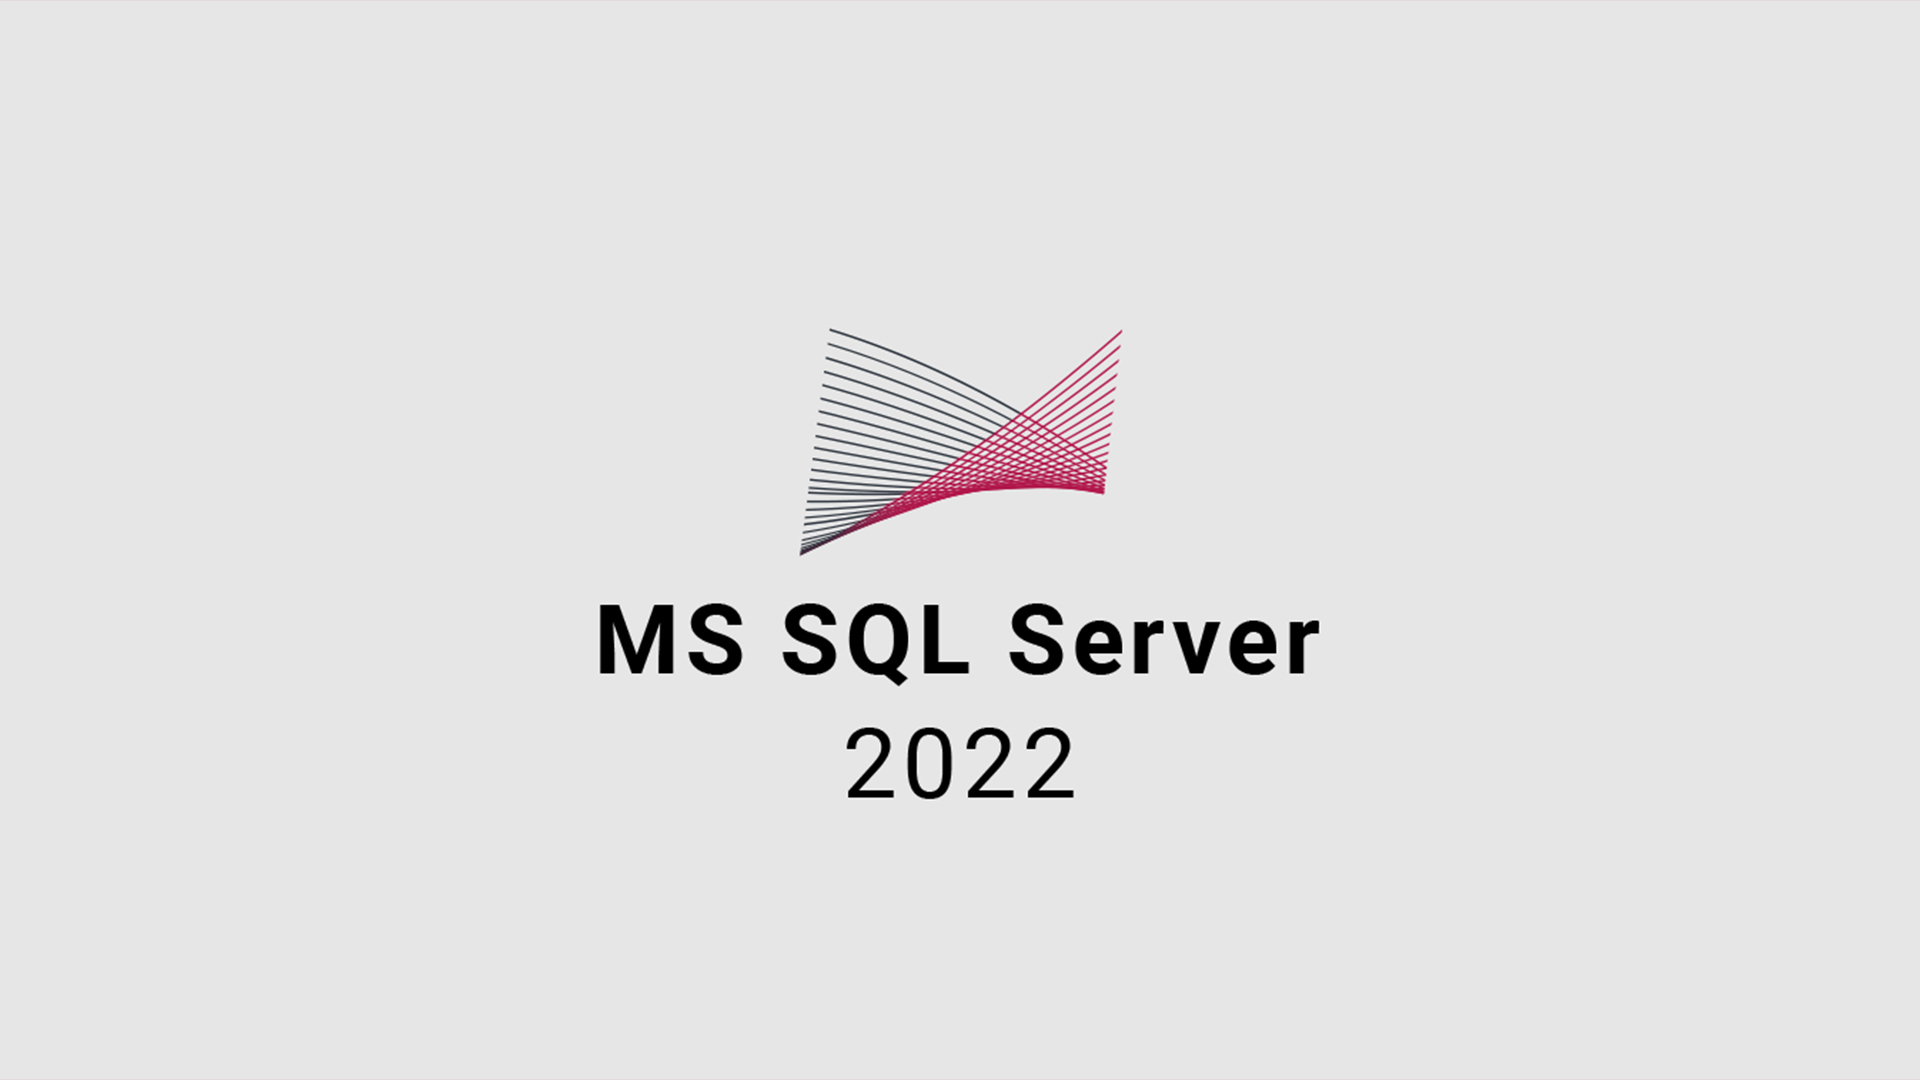 MS SQL Server 2022 CD Key 111.87$